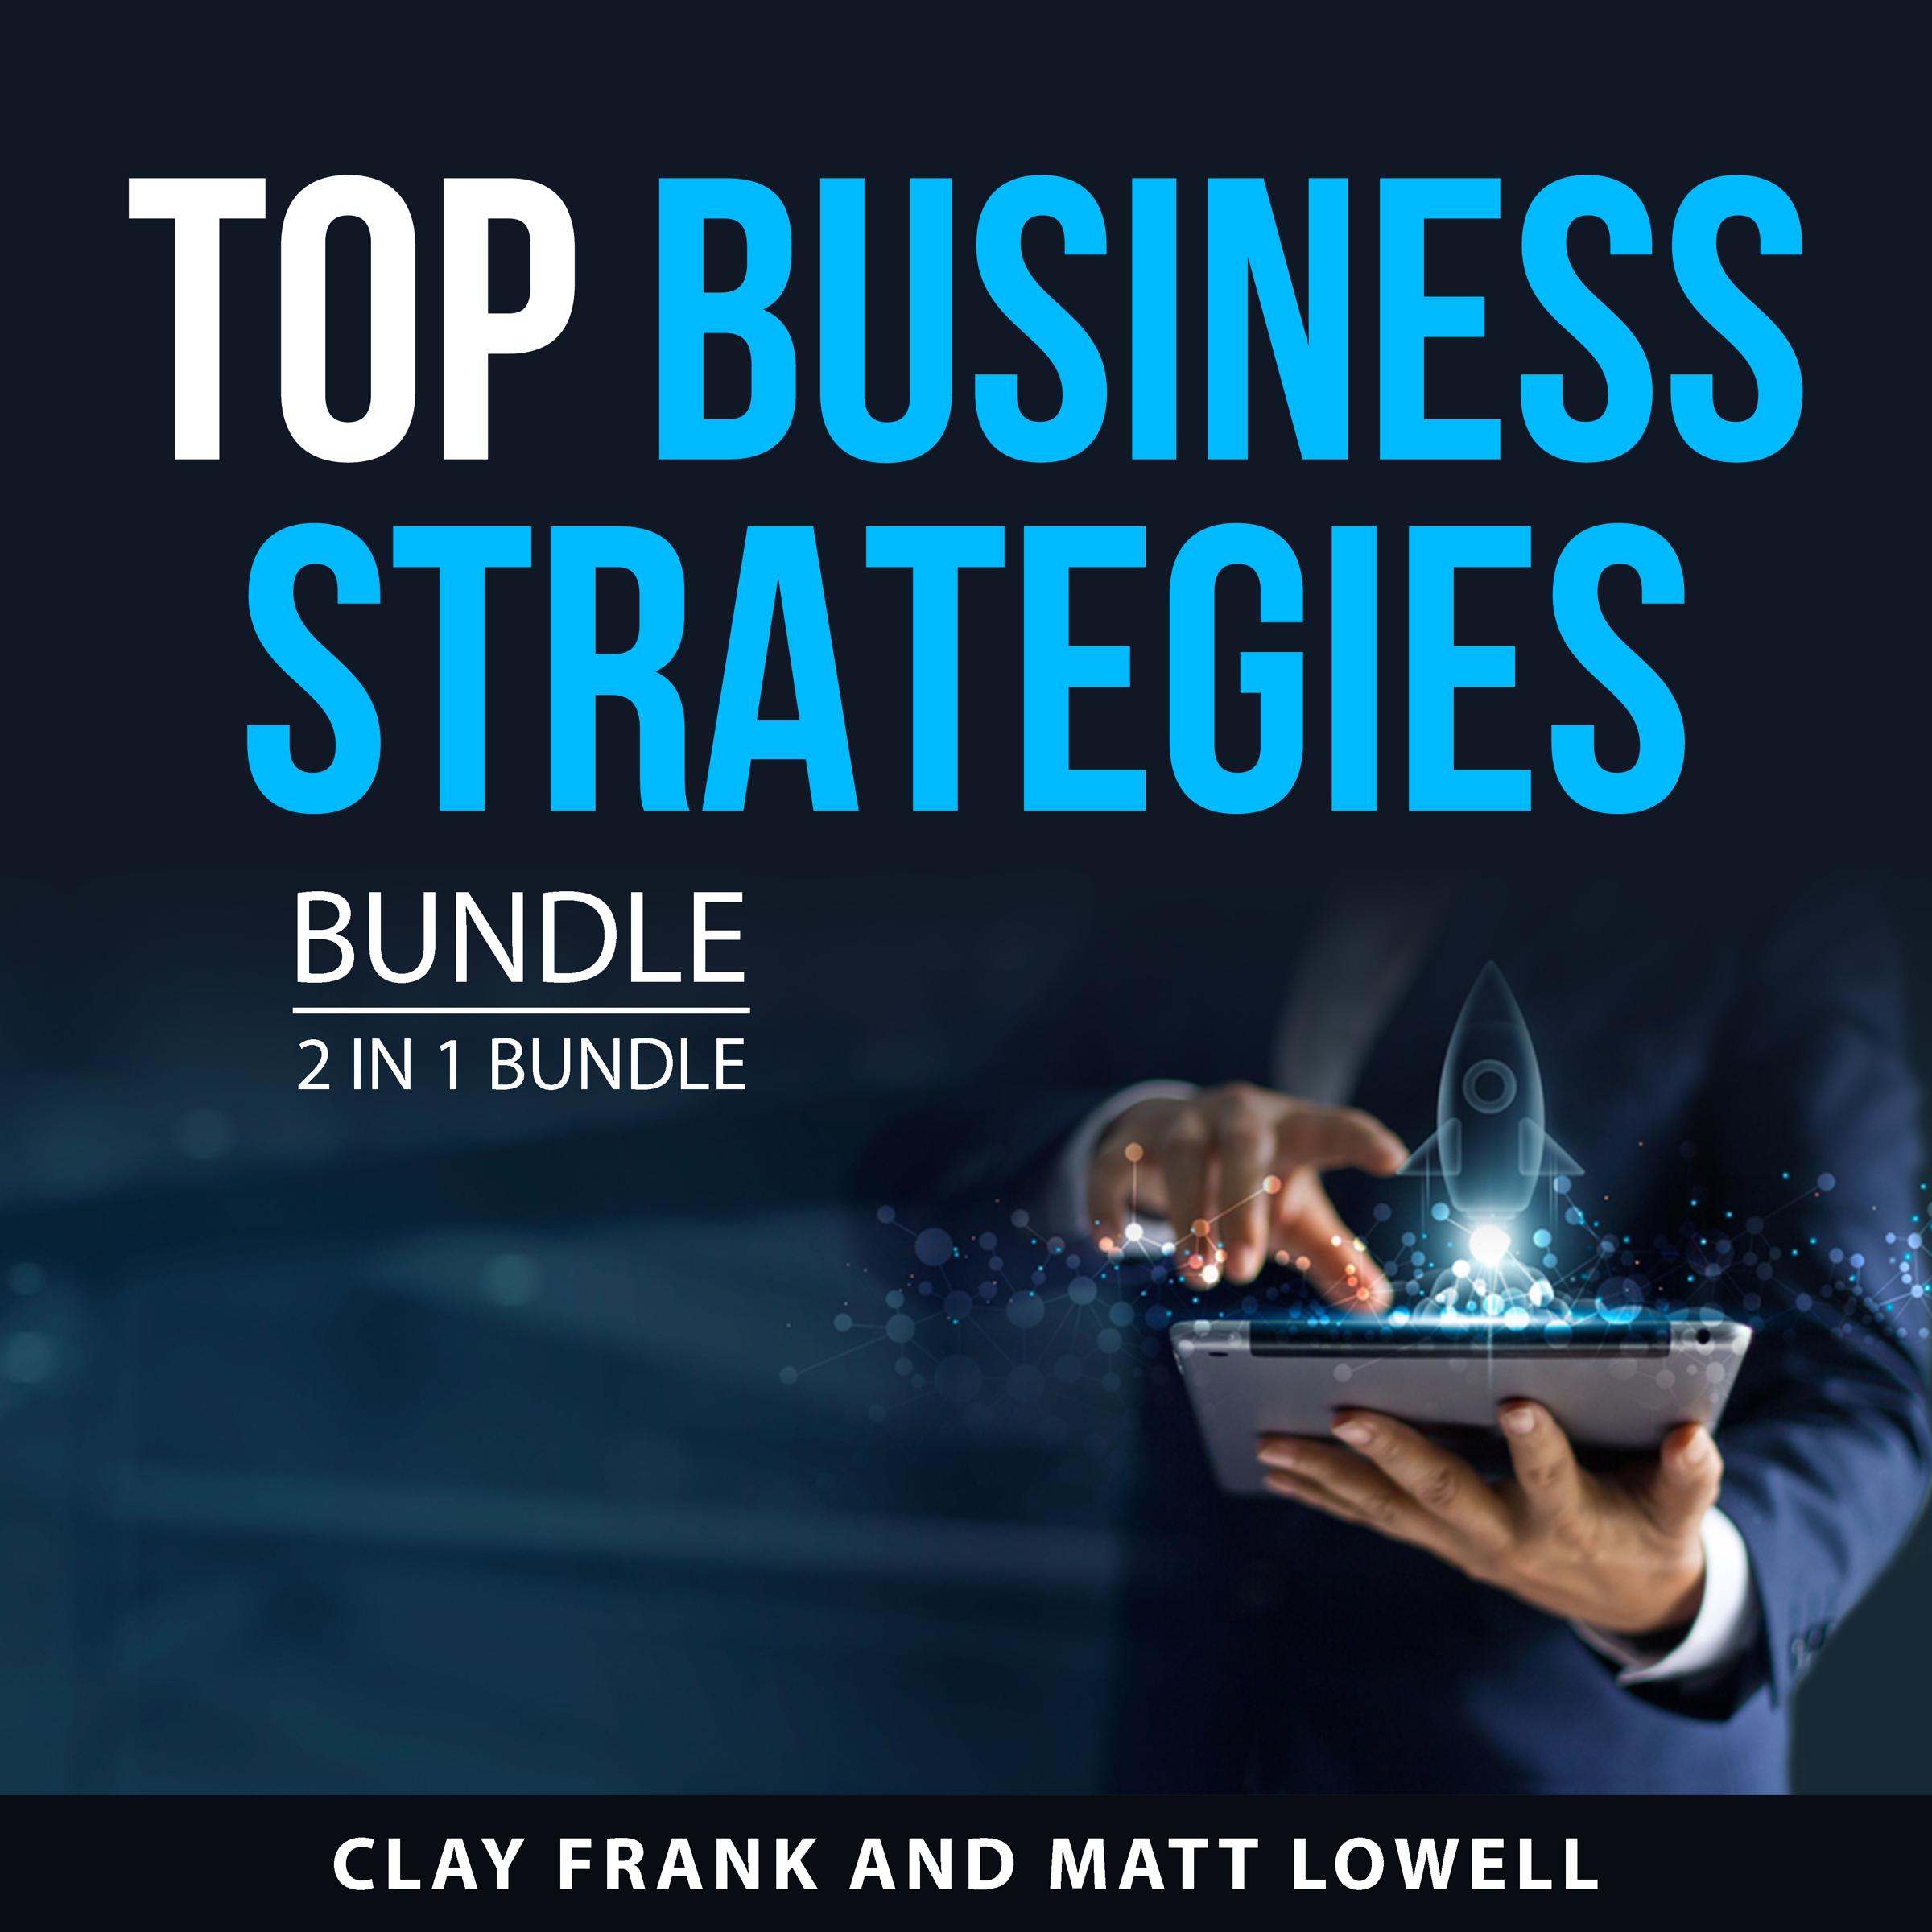 Top Business Strategies Bundle, 2 in 1 Bundle